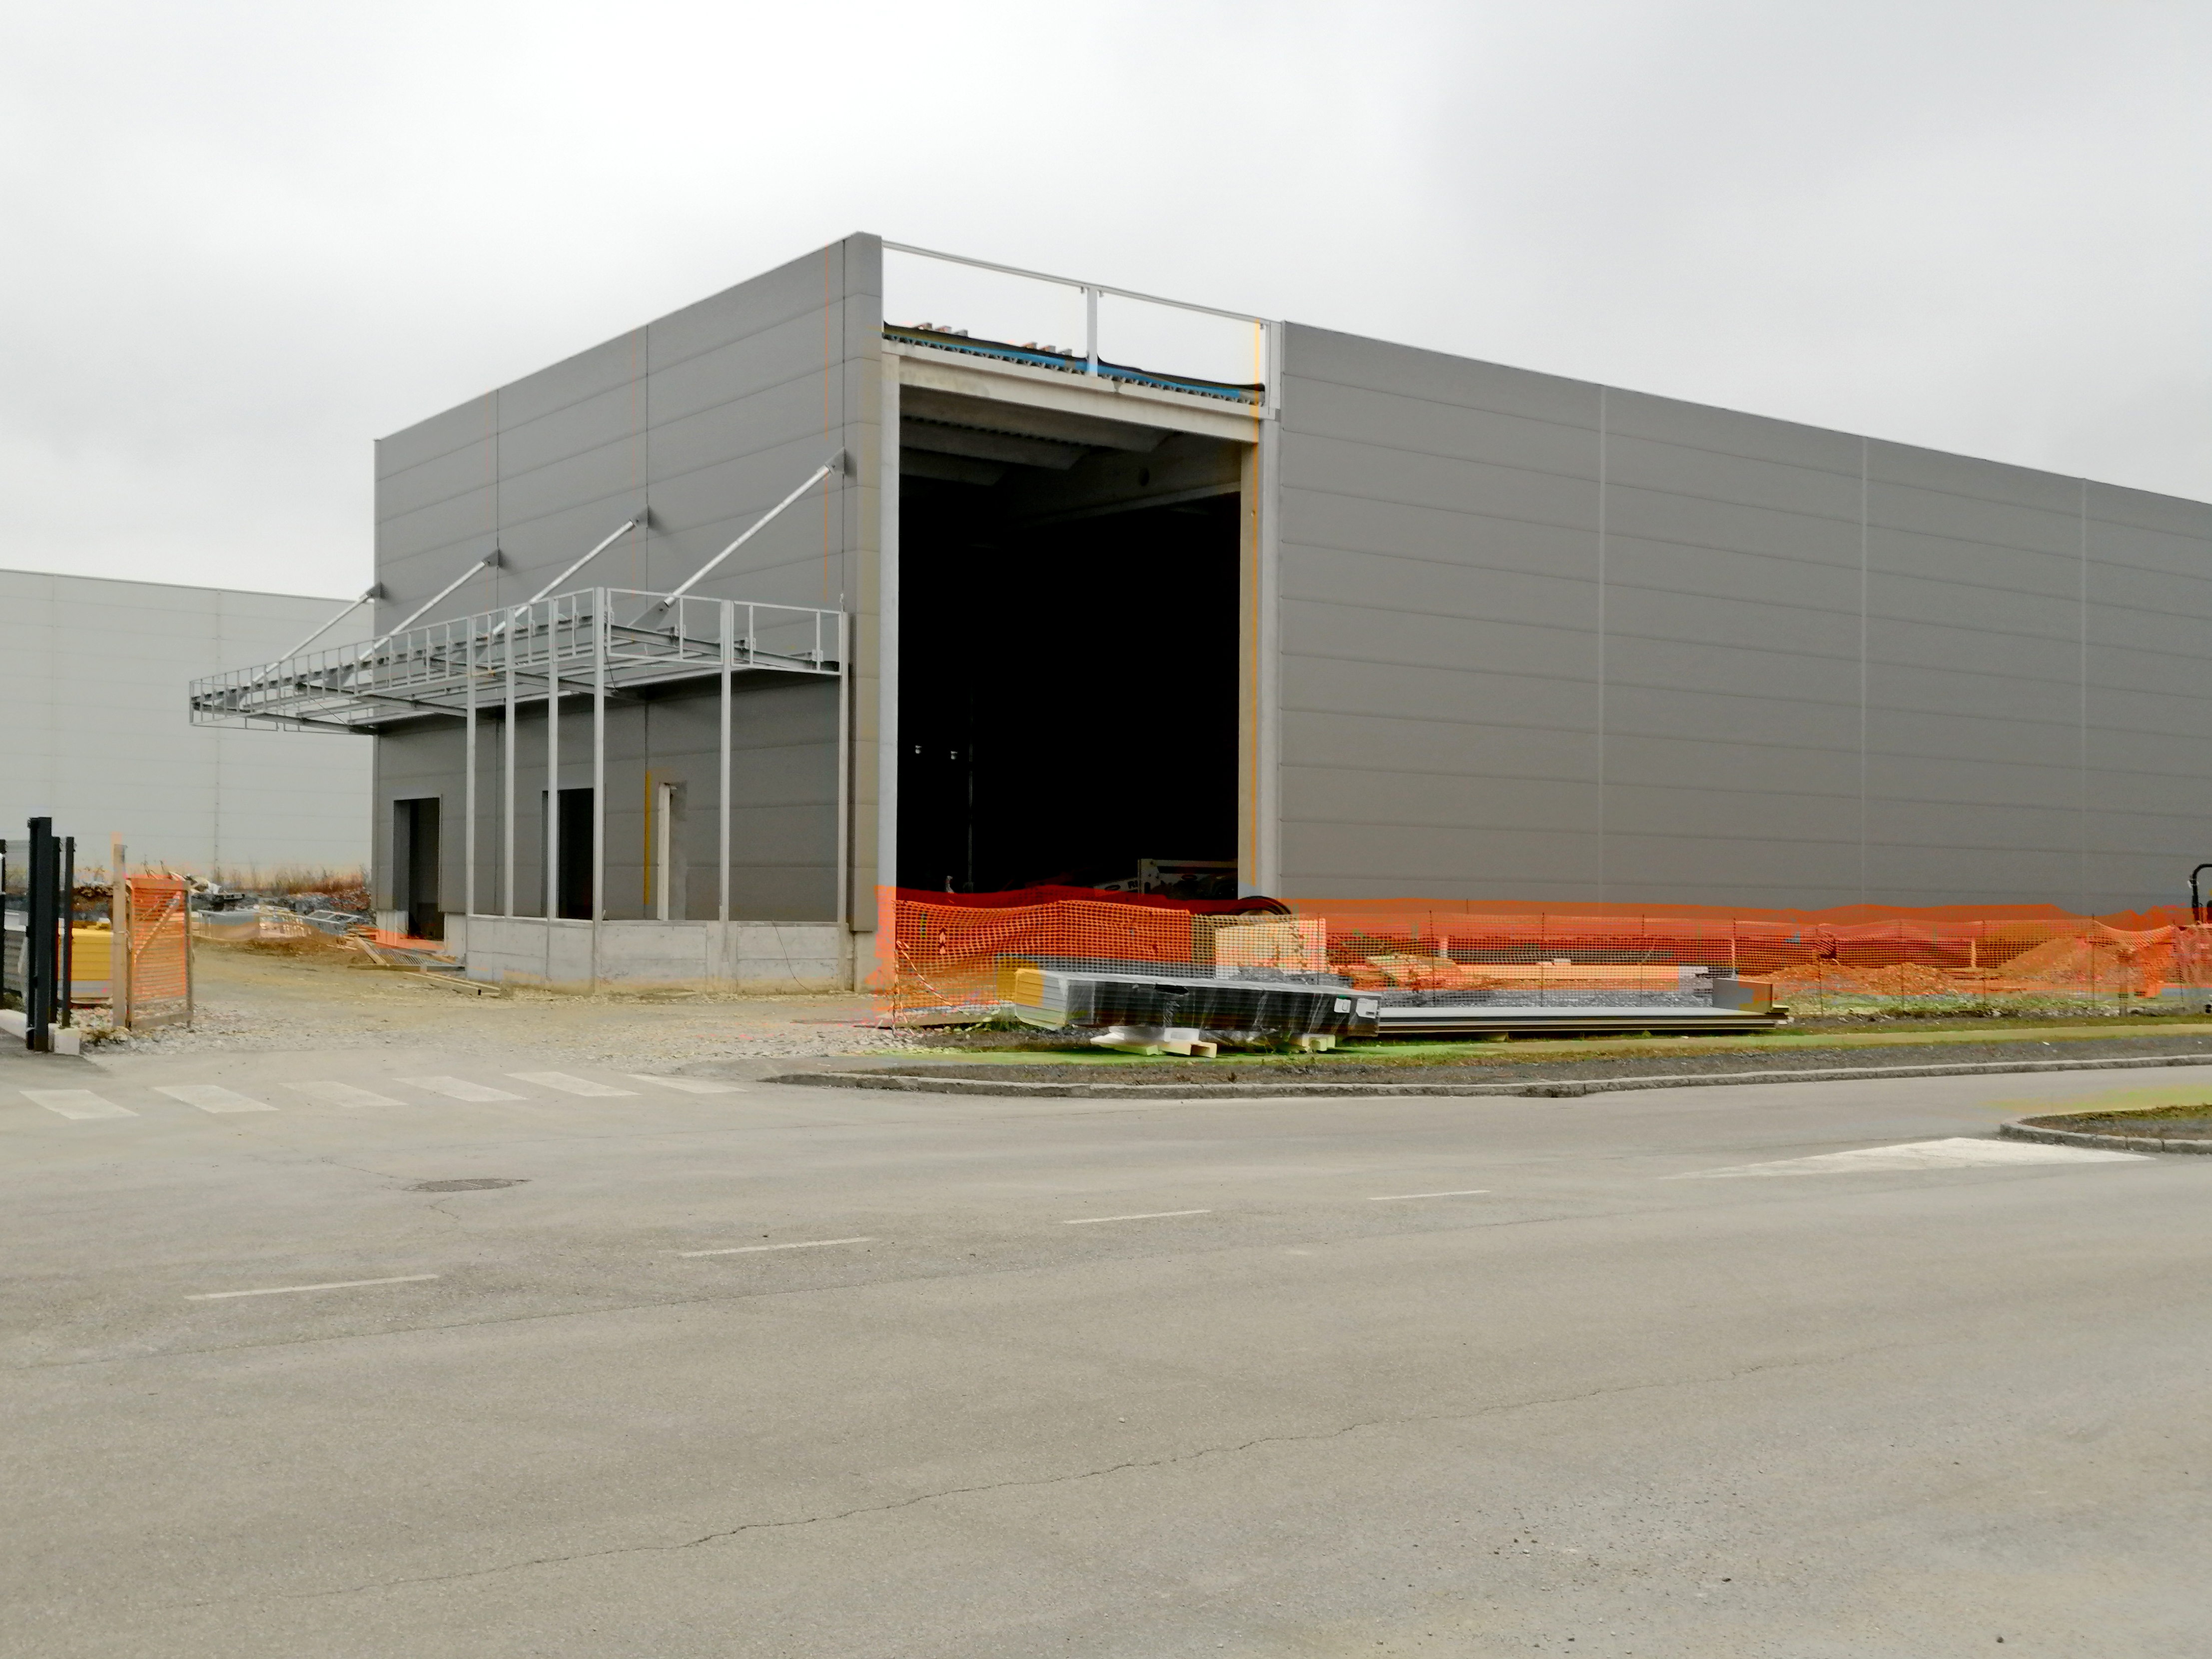 Poslovno-skladiščni objekt REAM v Komendi - November 2020